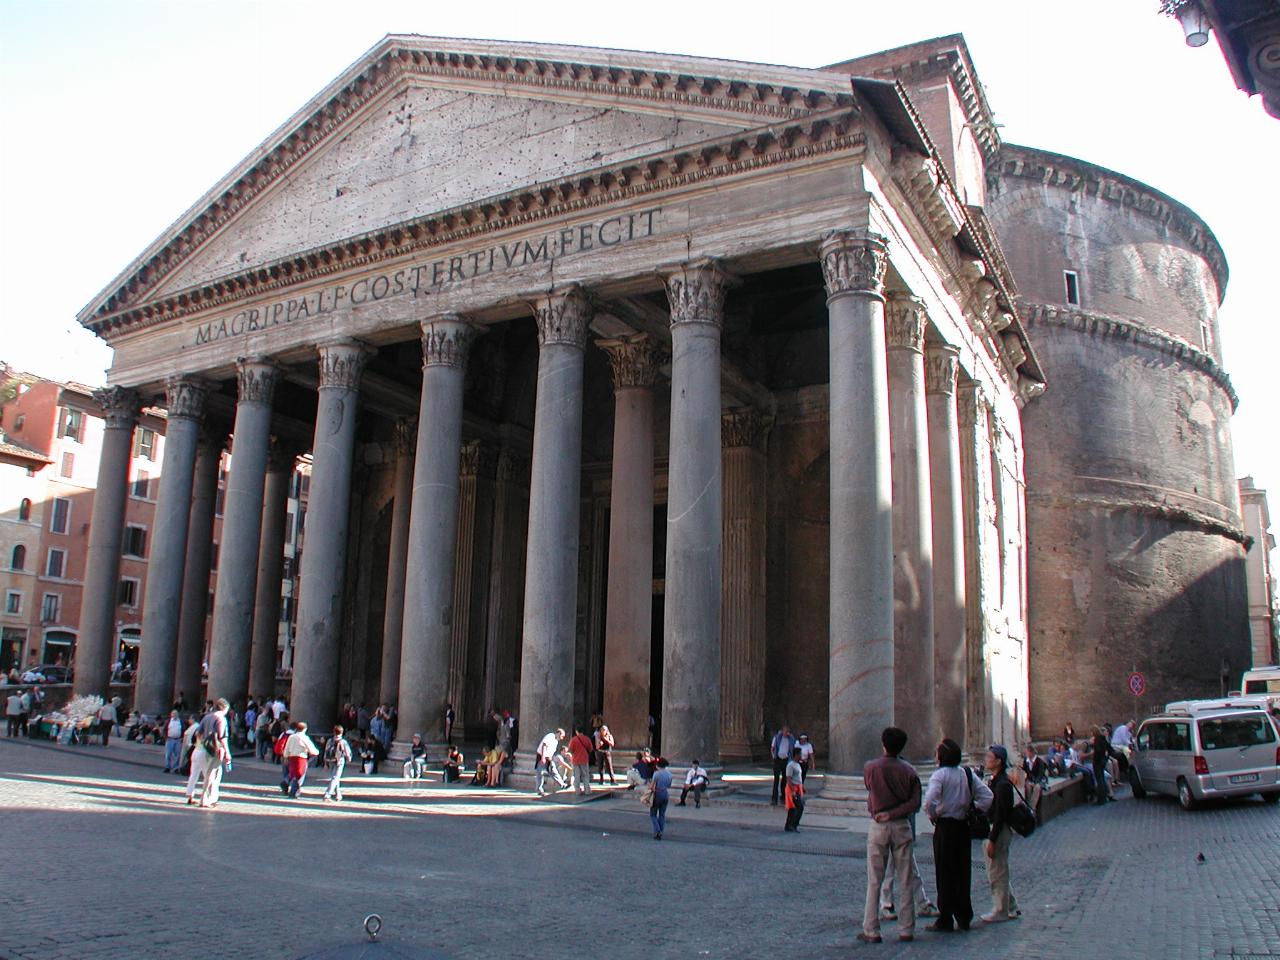 Pantheon, originally a pagan temple